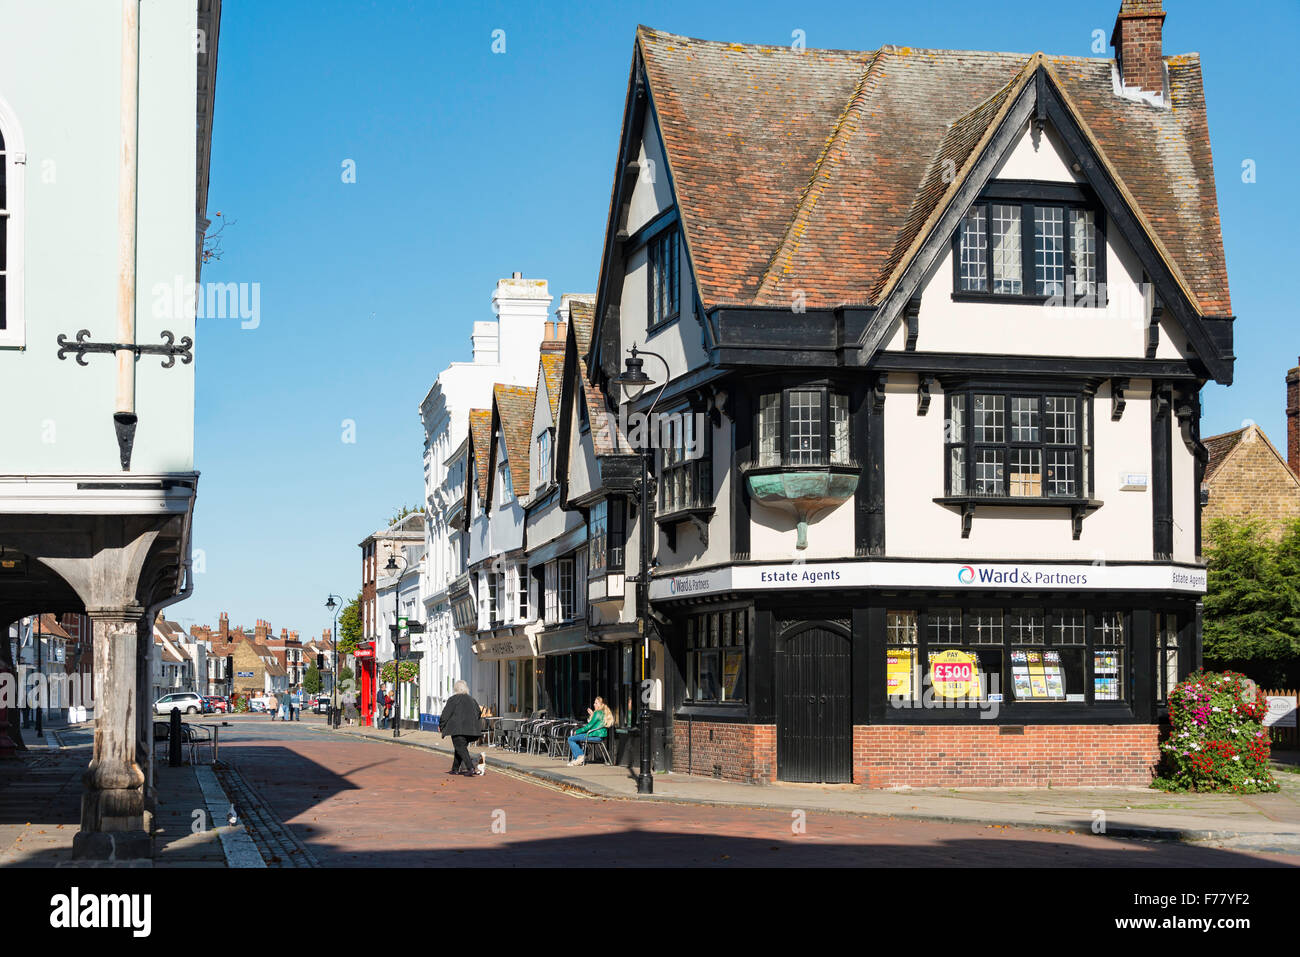 Court Street from Market Place, Faversham, Kent, England, United Kingdom Stock Photo